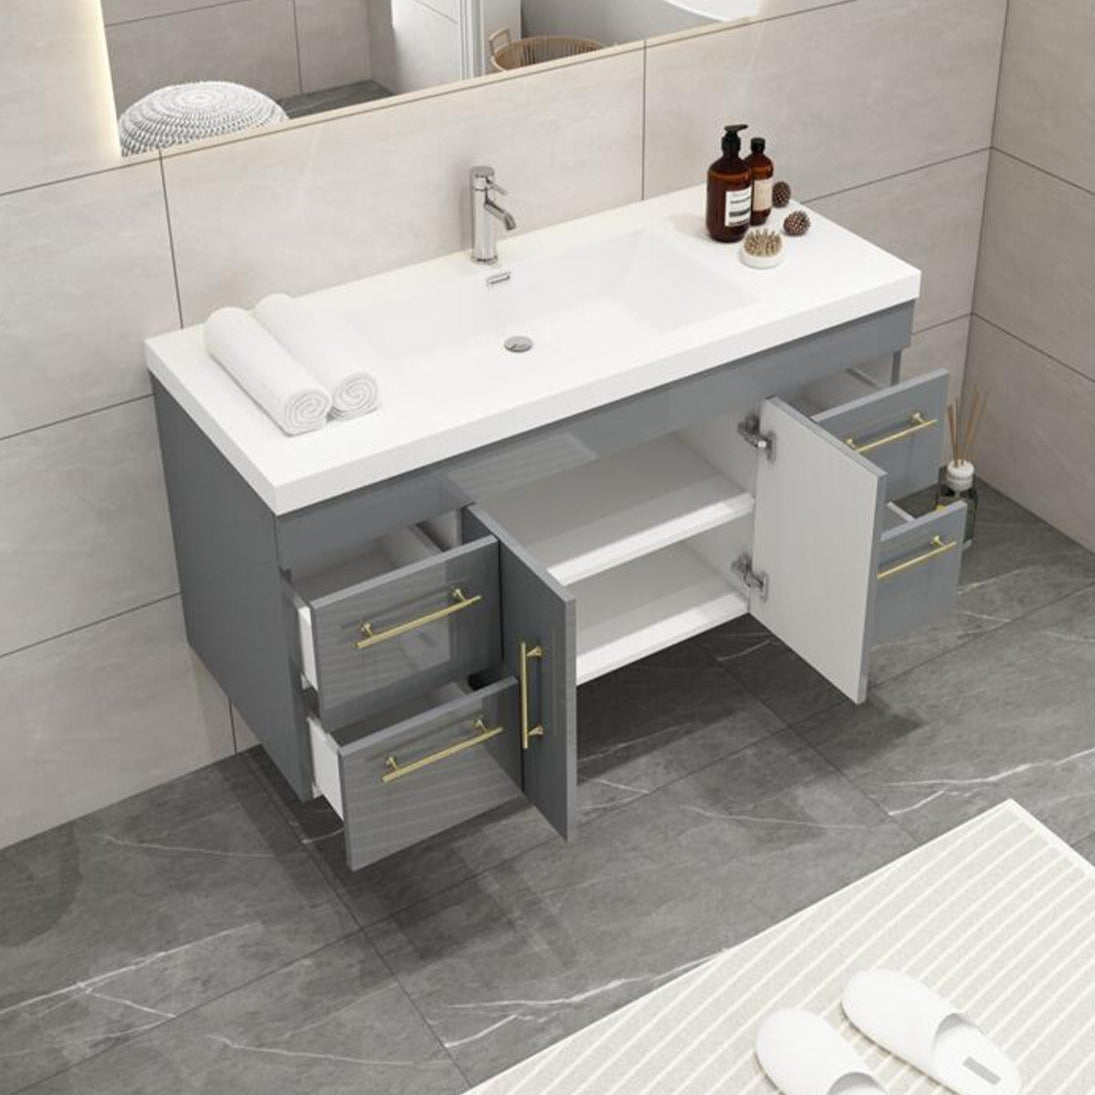 Elsa 48" Wall Mounted Bathroom Vanity with Reinforced Acrylic Sink